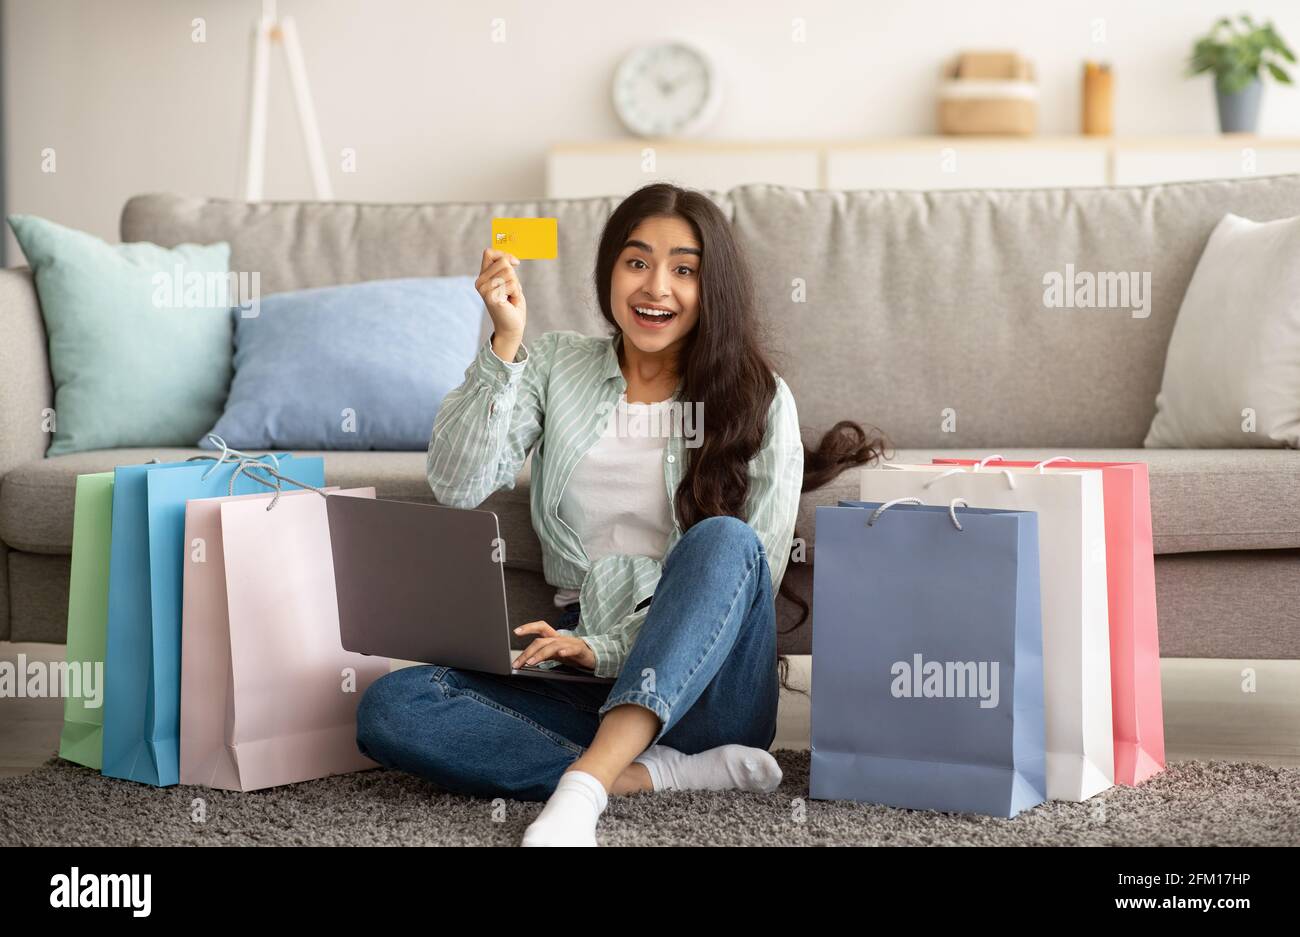 Mujer india que se siente feliz sobre la venta en la tienda en línea, usando el ordenador portátil, mostrando tarjeta de crédito, sentado en el suelo con bolsas de regalo Foto de stock